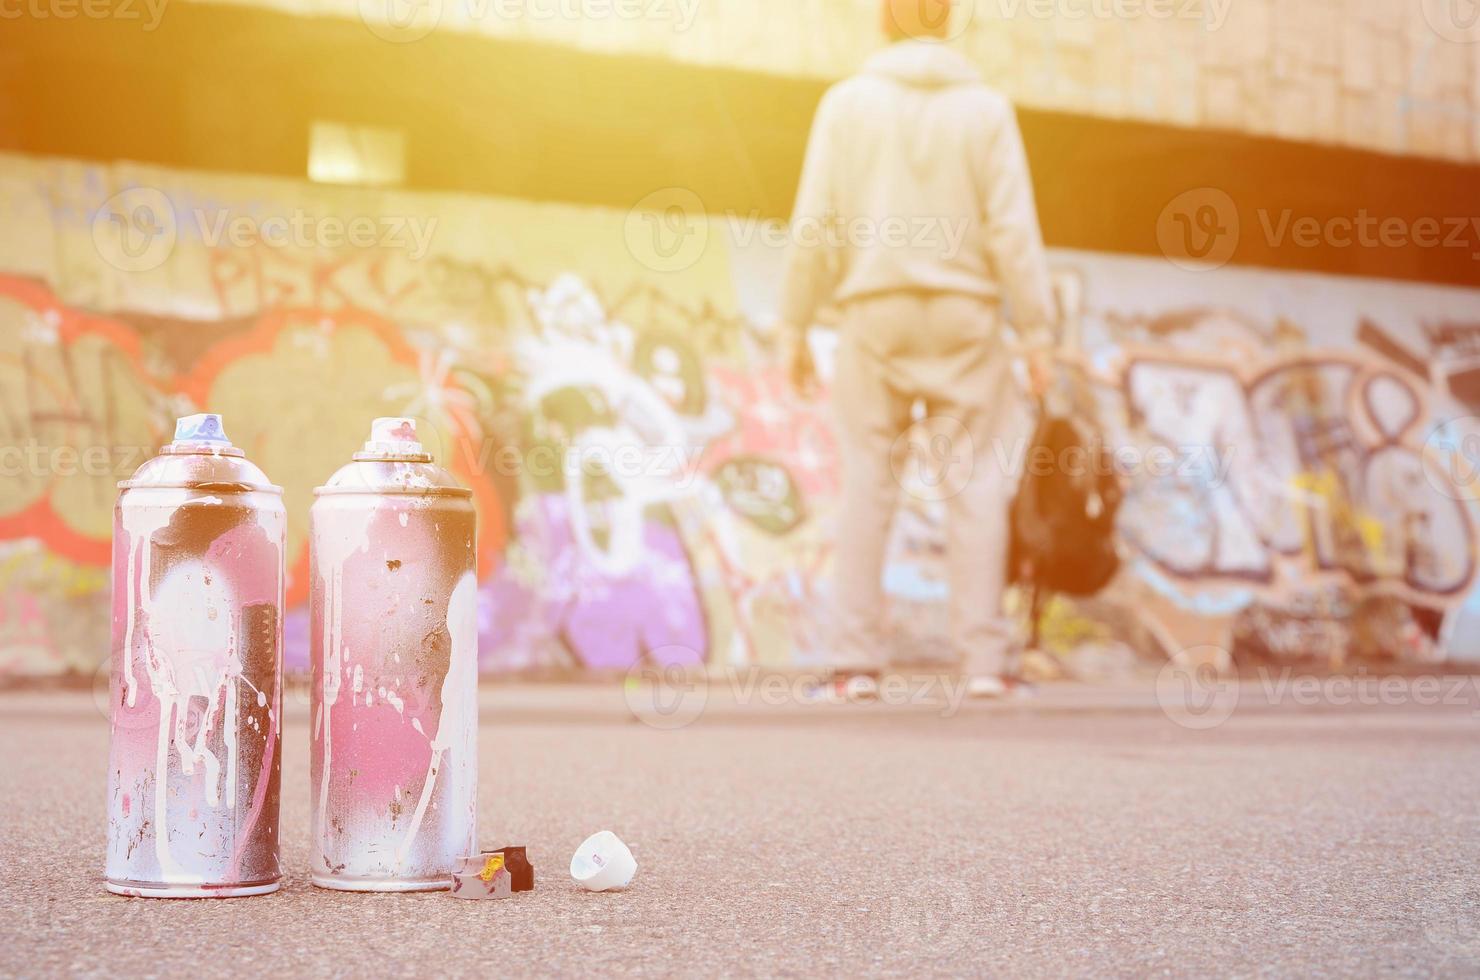 plusieurs bombes aérosols usagées avec de la peinture rose et blanche se trouvent sur l'asphalte contre le gars debout devant un mur peint dans des dessins de graffitis colorés photo